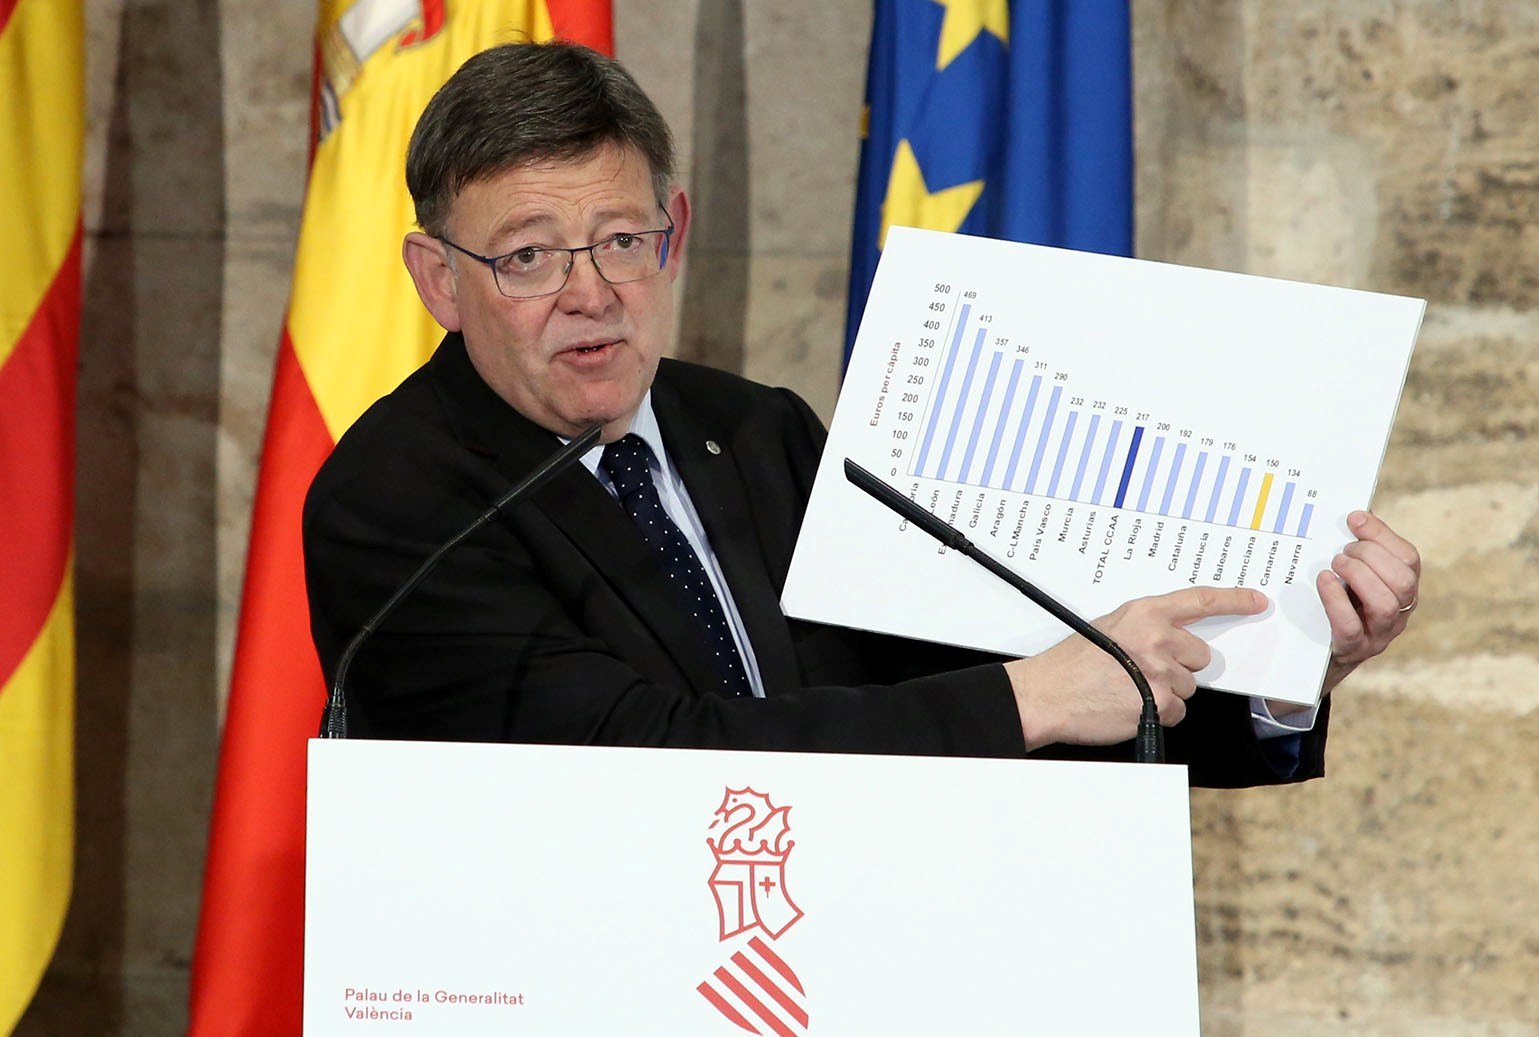 El govern valencià qualifica "d'escàndol i arbitraris" els pressupostos de l'Estat